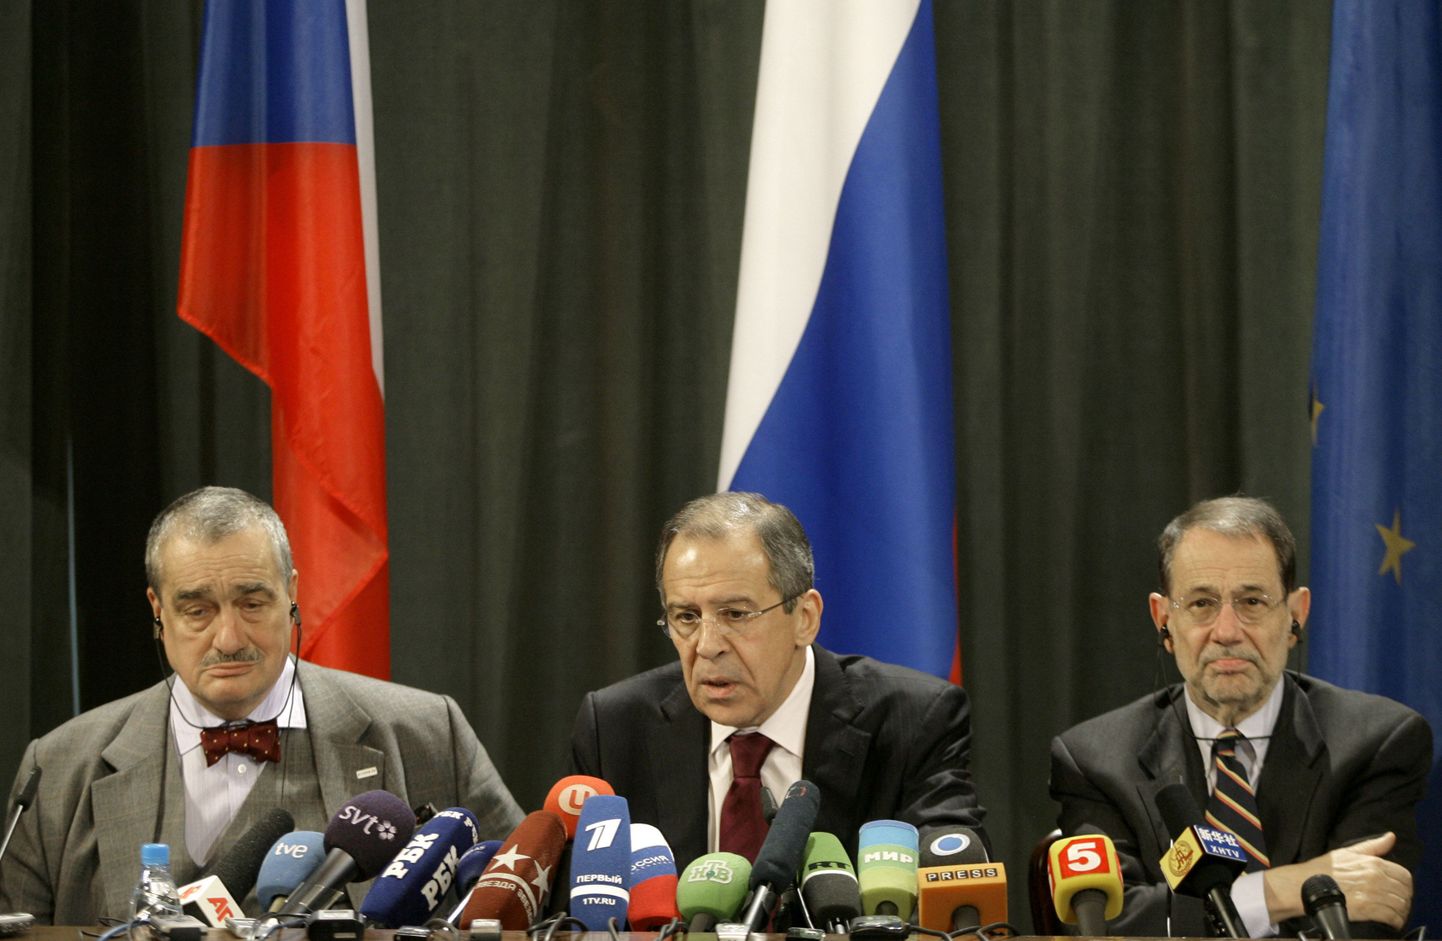 Vene Föderatsiooni välisminister Sergei Lavrov istumas oma Tšehhi kolleegi Karel Schwarzenbergi ja euroliidu välispoliitika juhi Javier Solana vahel pressikonverentsil.